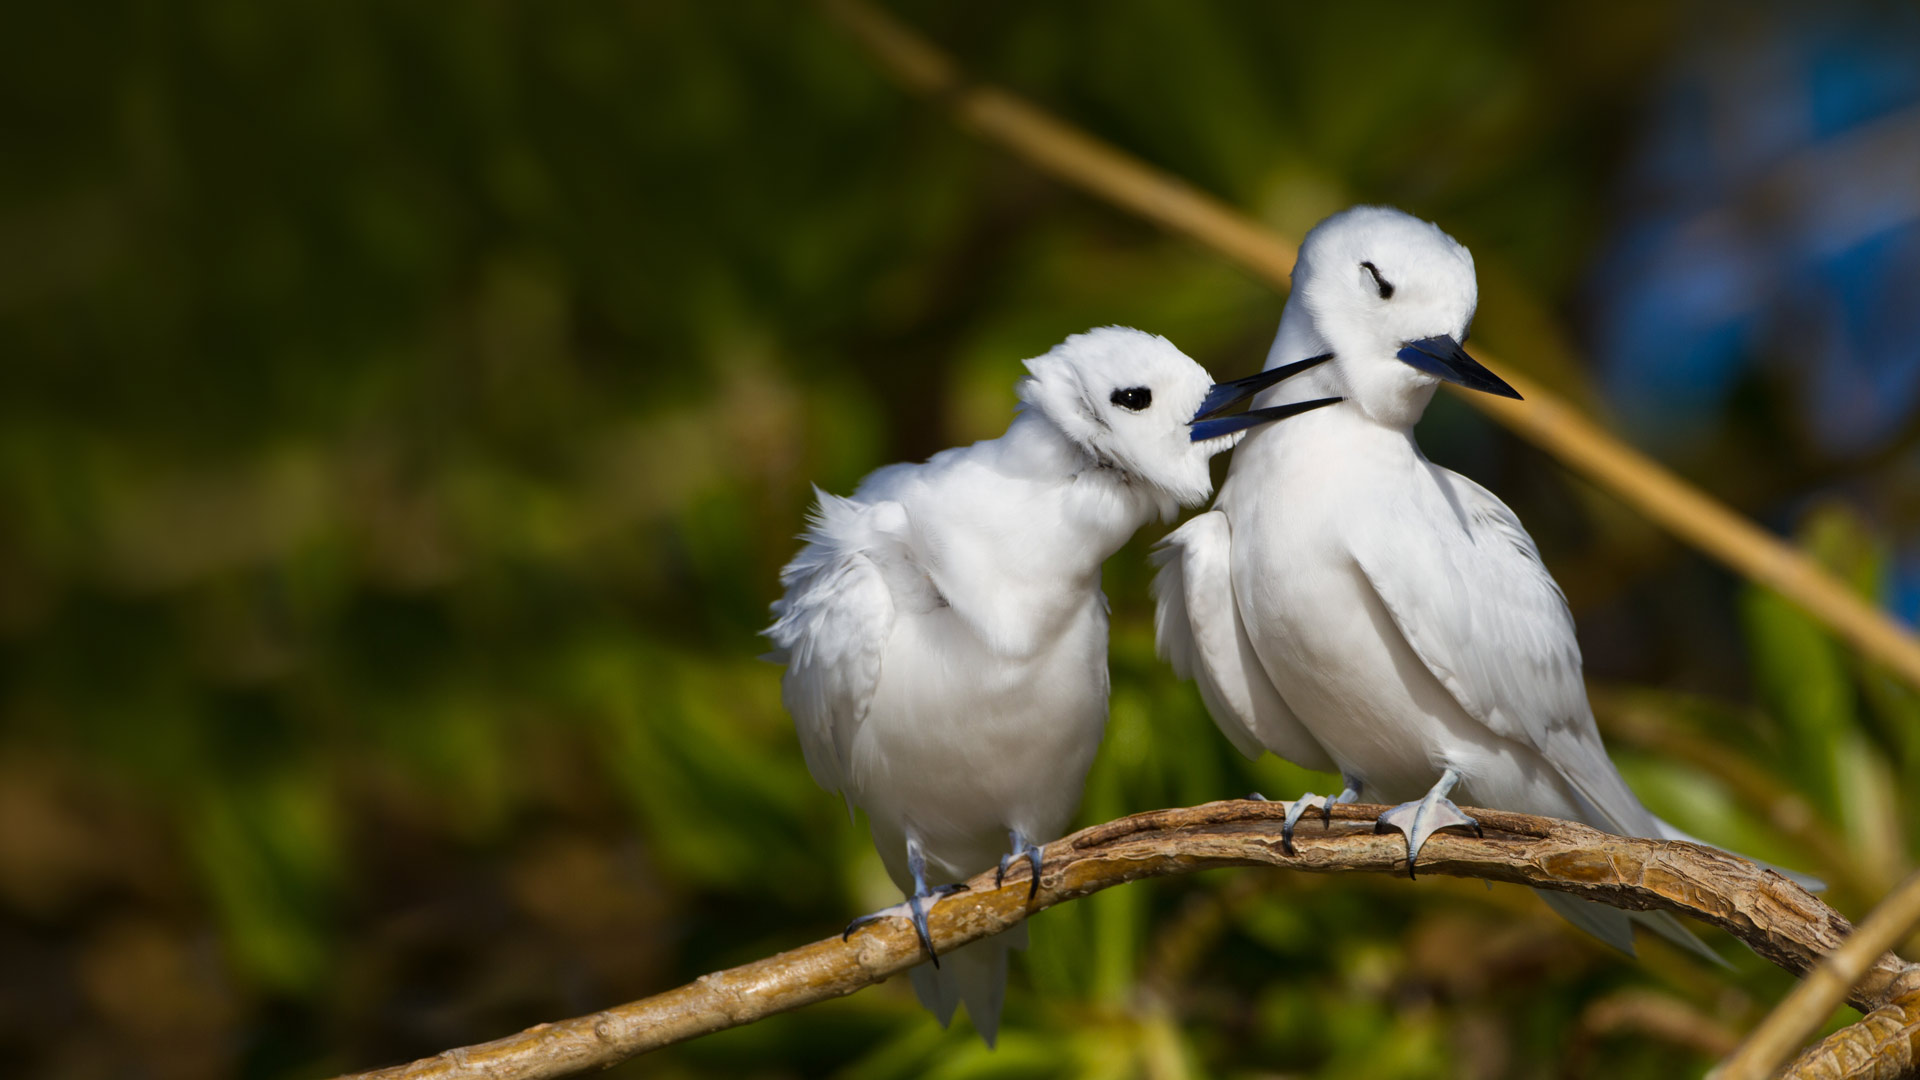 عکس با کیفیت از زوج پرنده سفید بر روی شاخه درخت در حال پر آرایی